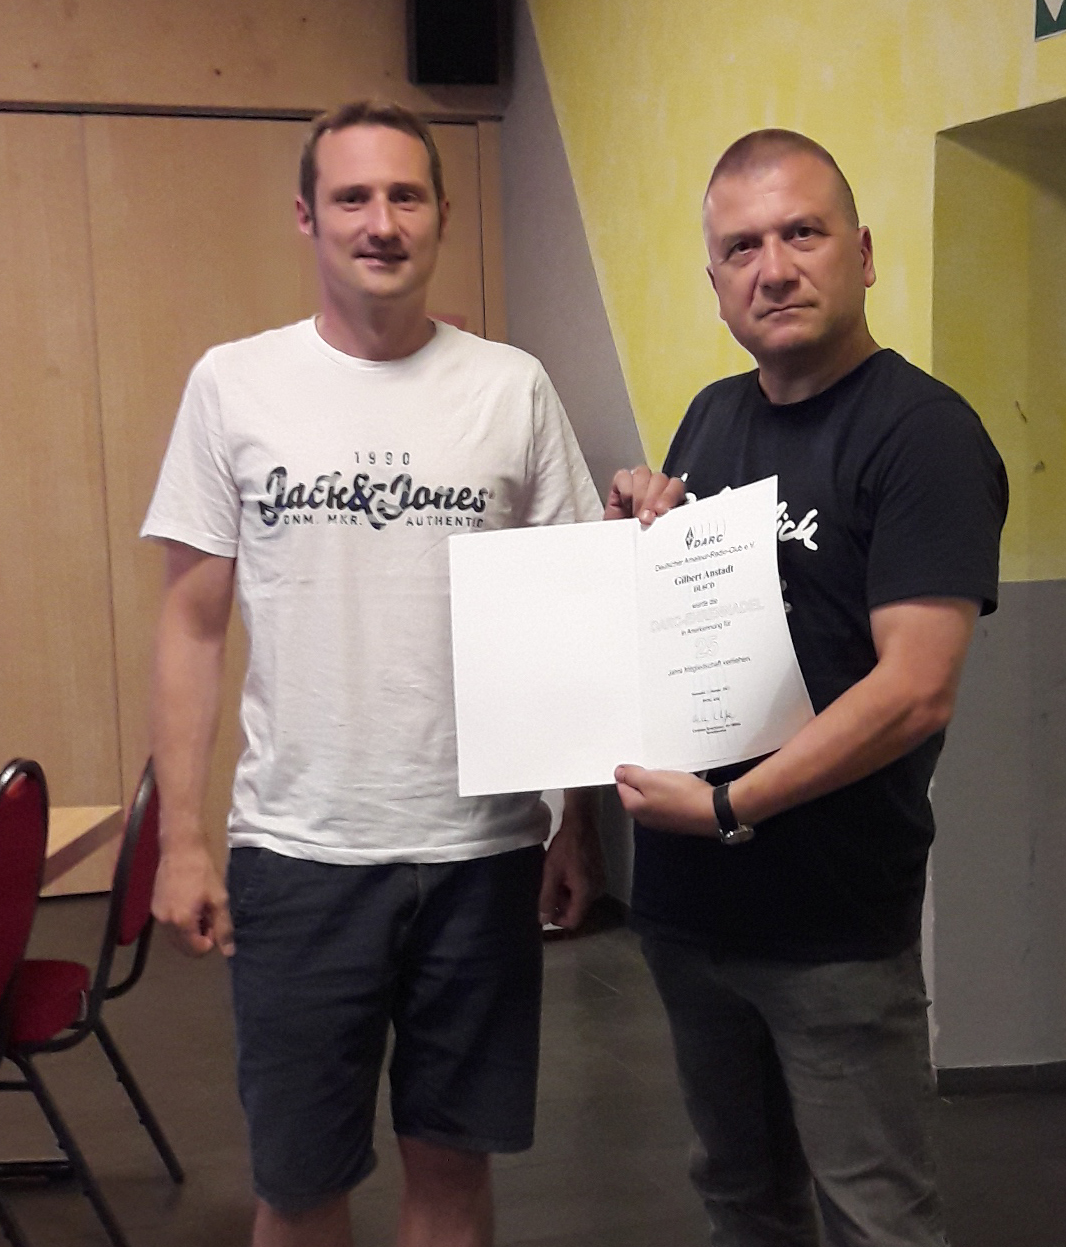 OM Gilbert DL6CD erhält von OVV Norbert DL6VN die Urkunde für 25-jährige DARC-Mitgliedschaft